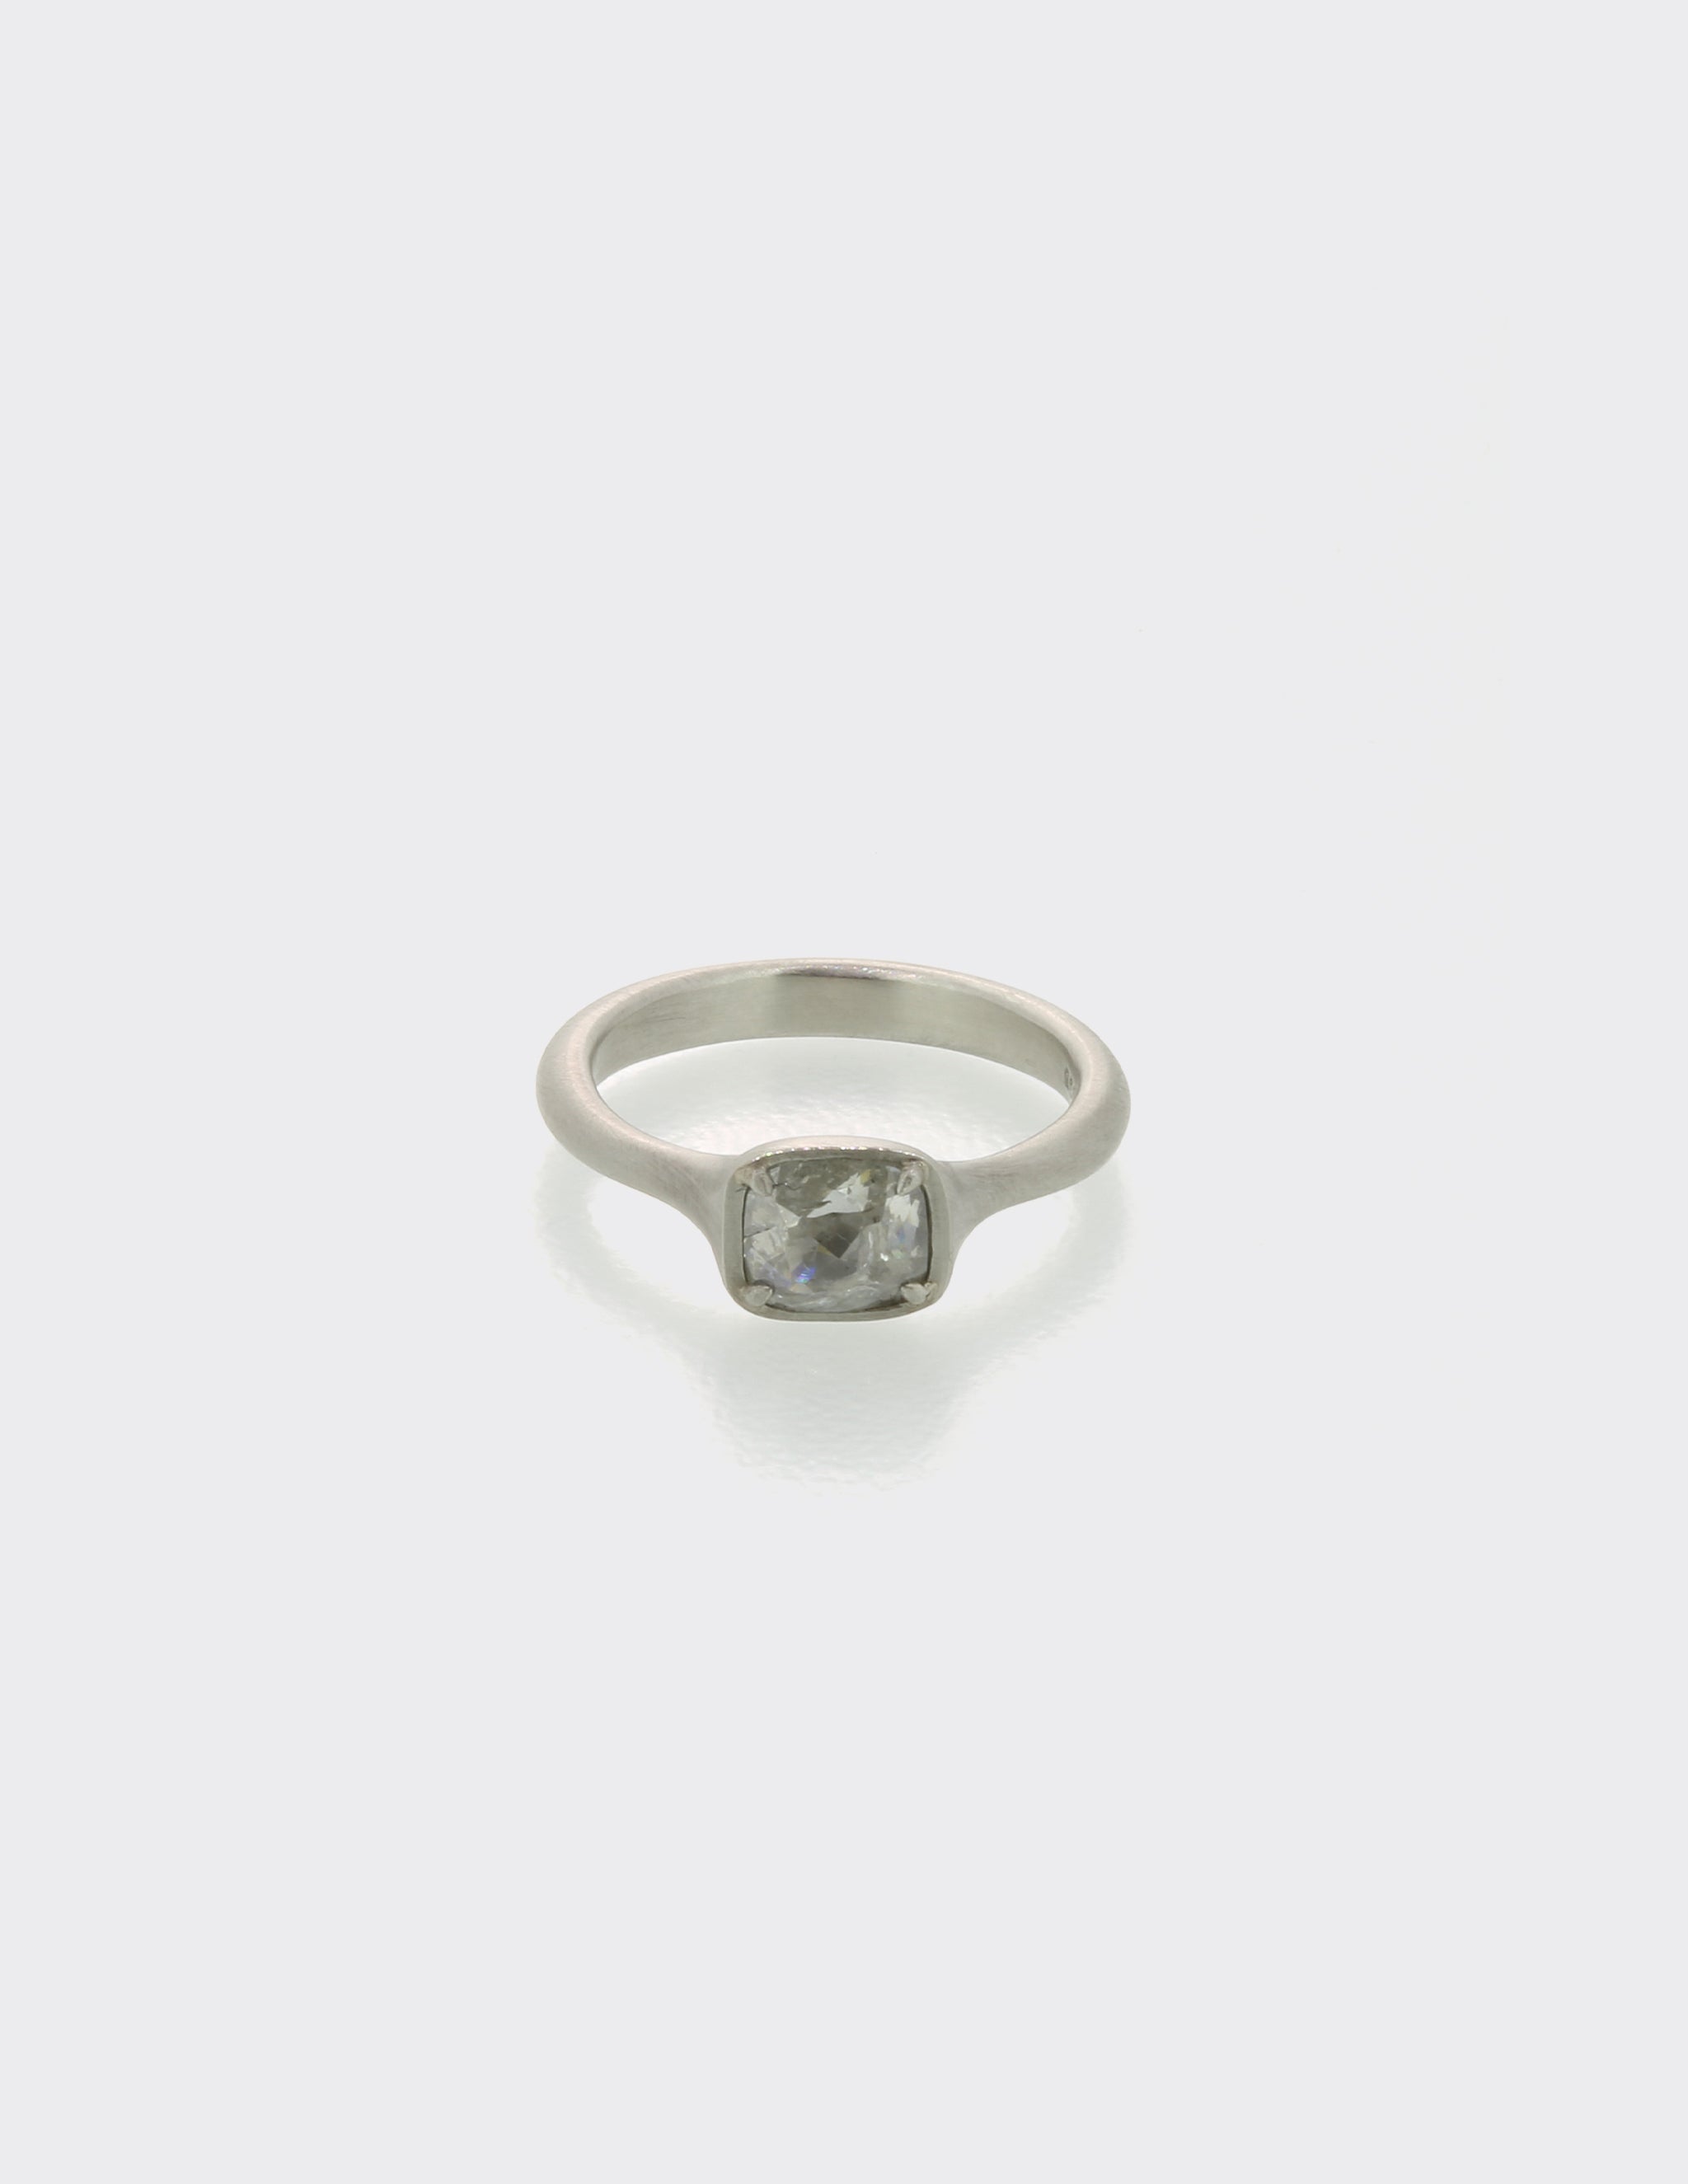 Platinum ring with milky diamond